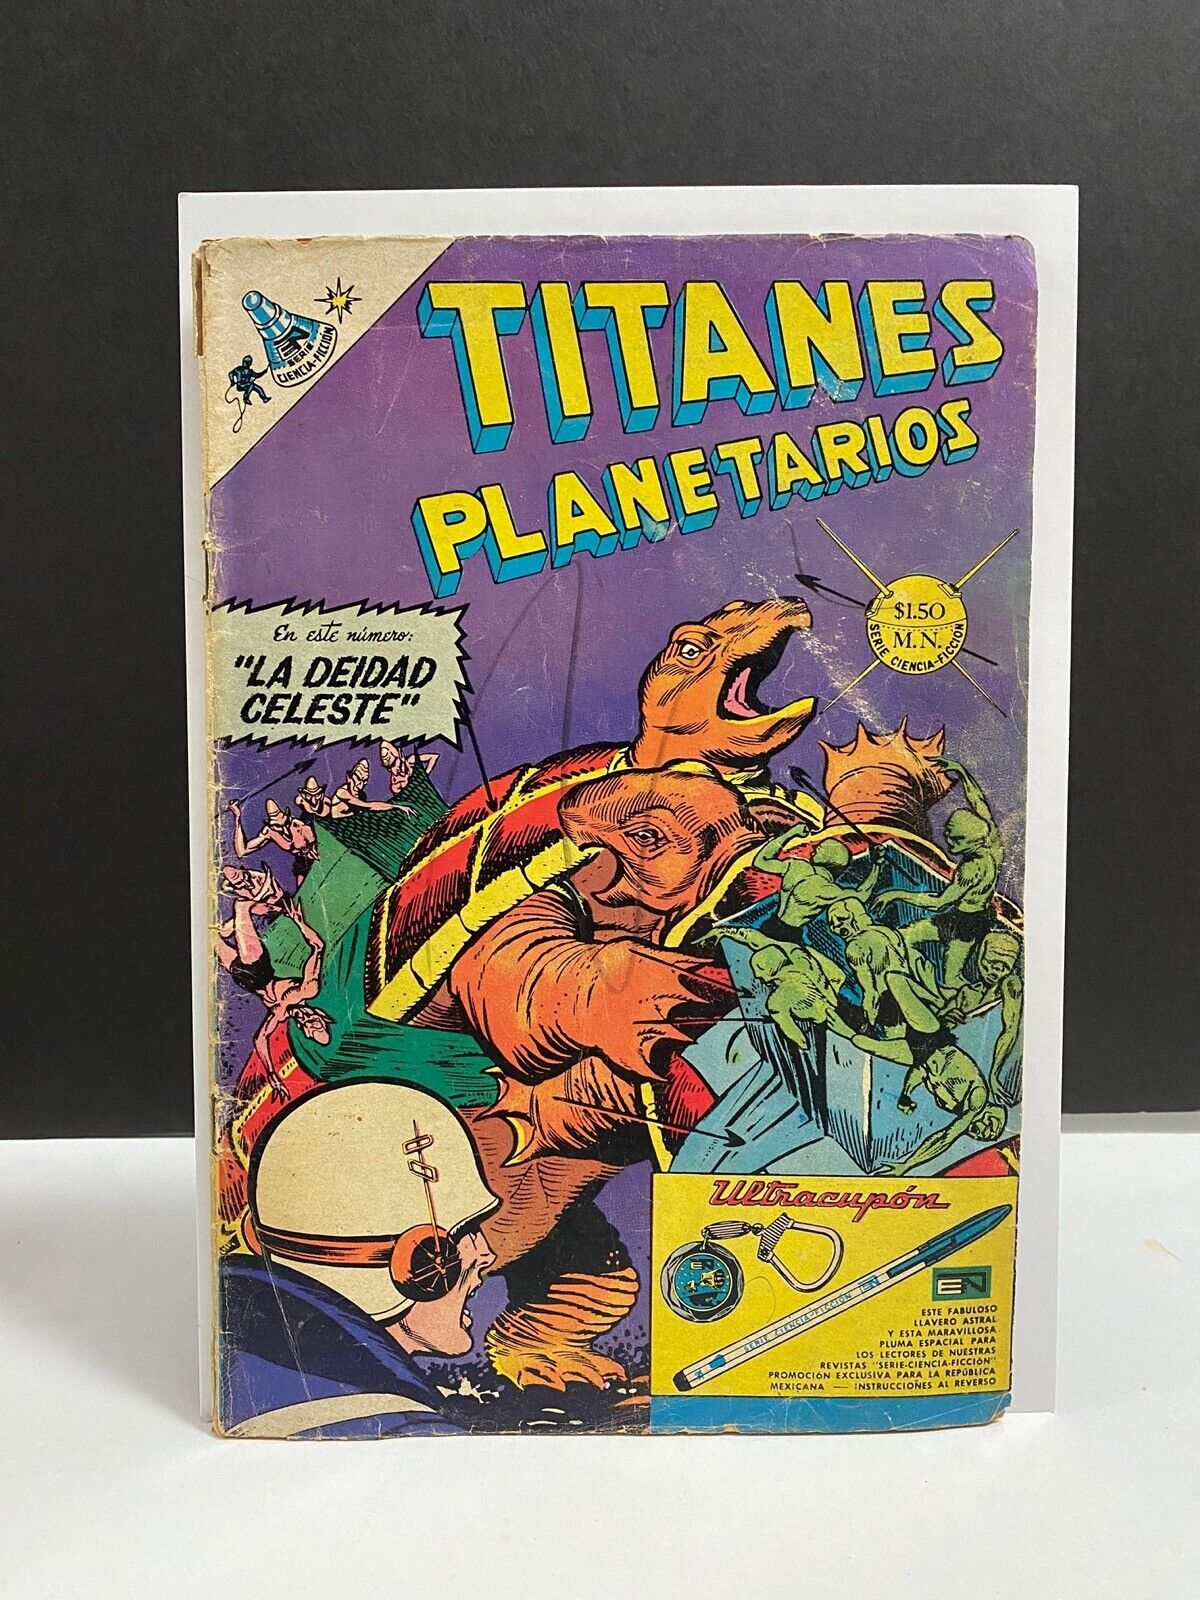 Mystery in Space #109 DC (Titanes Planetarios #269) Novaro Mexico VG+